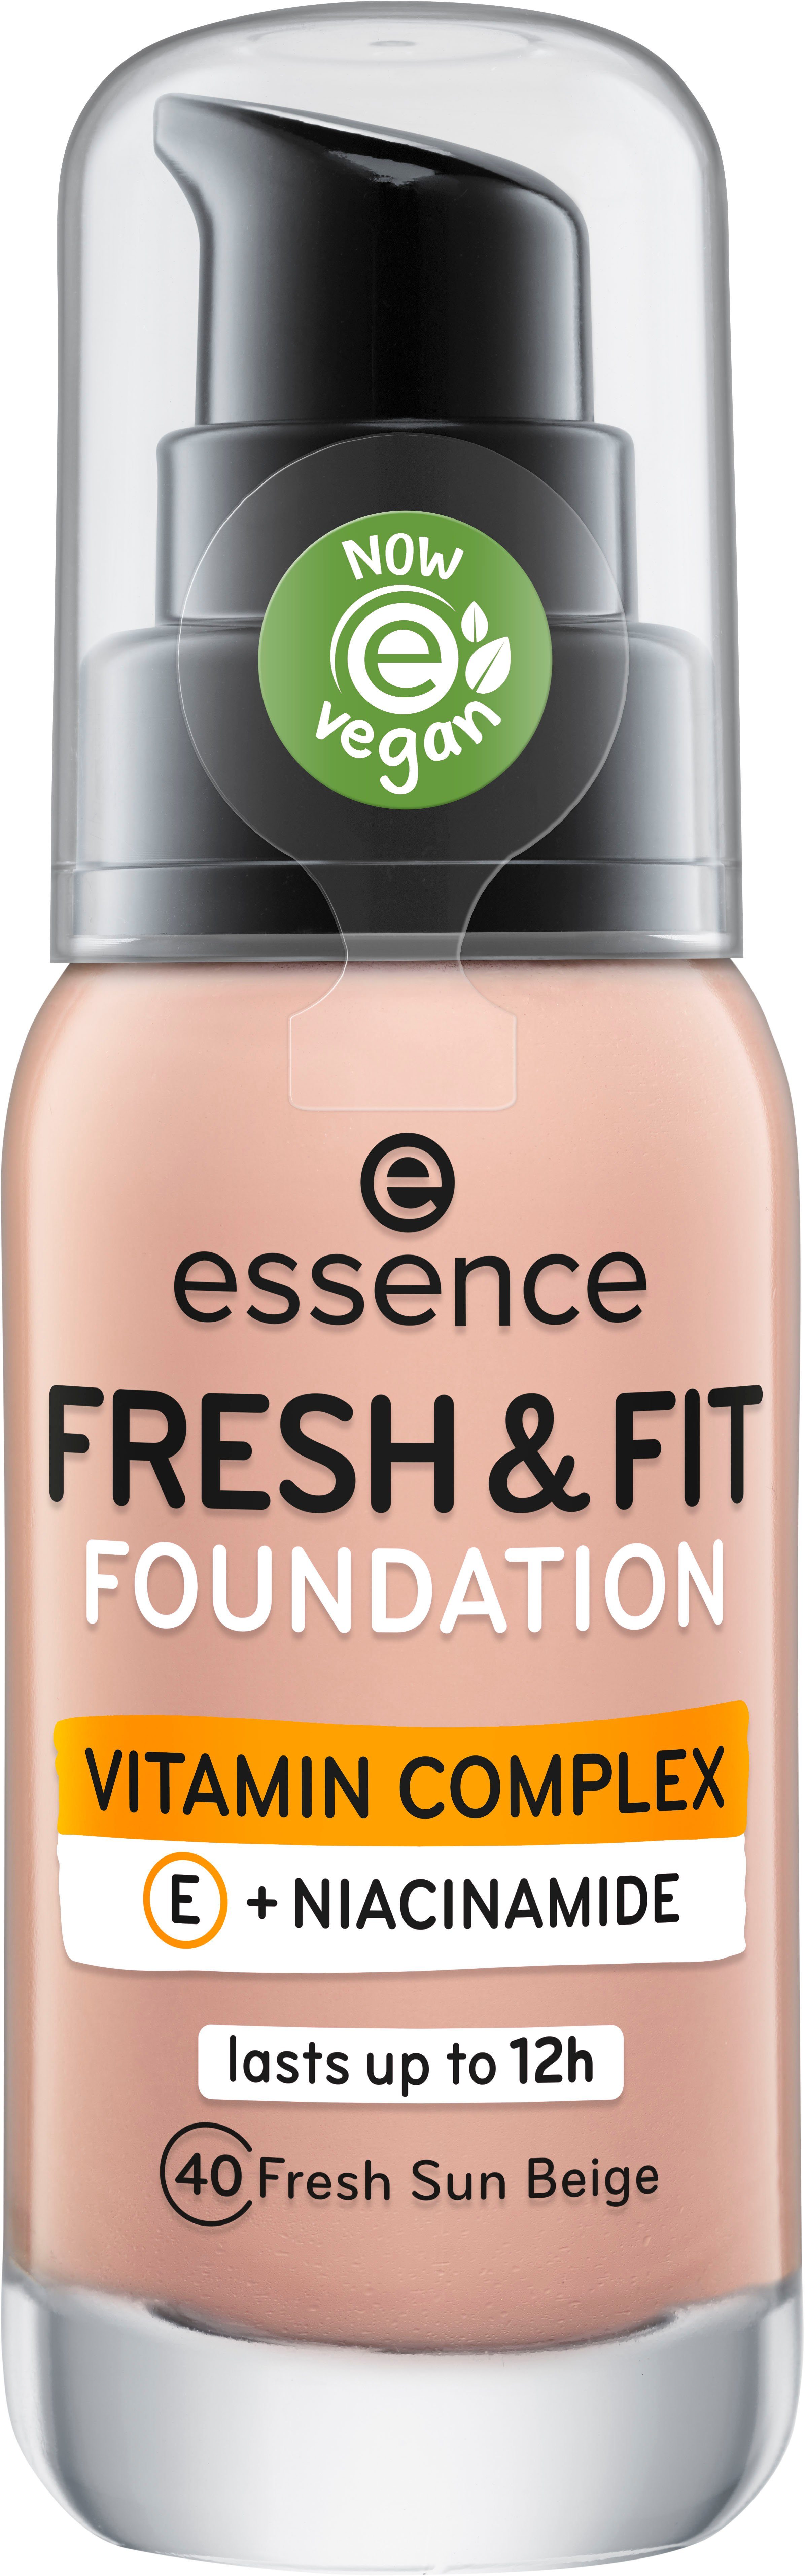 FRESH Foundation FIT FOUNDATION, fresh & beige sun 3-tlg. Essence